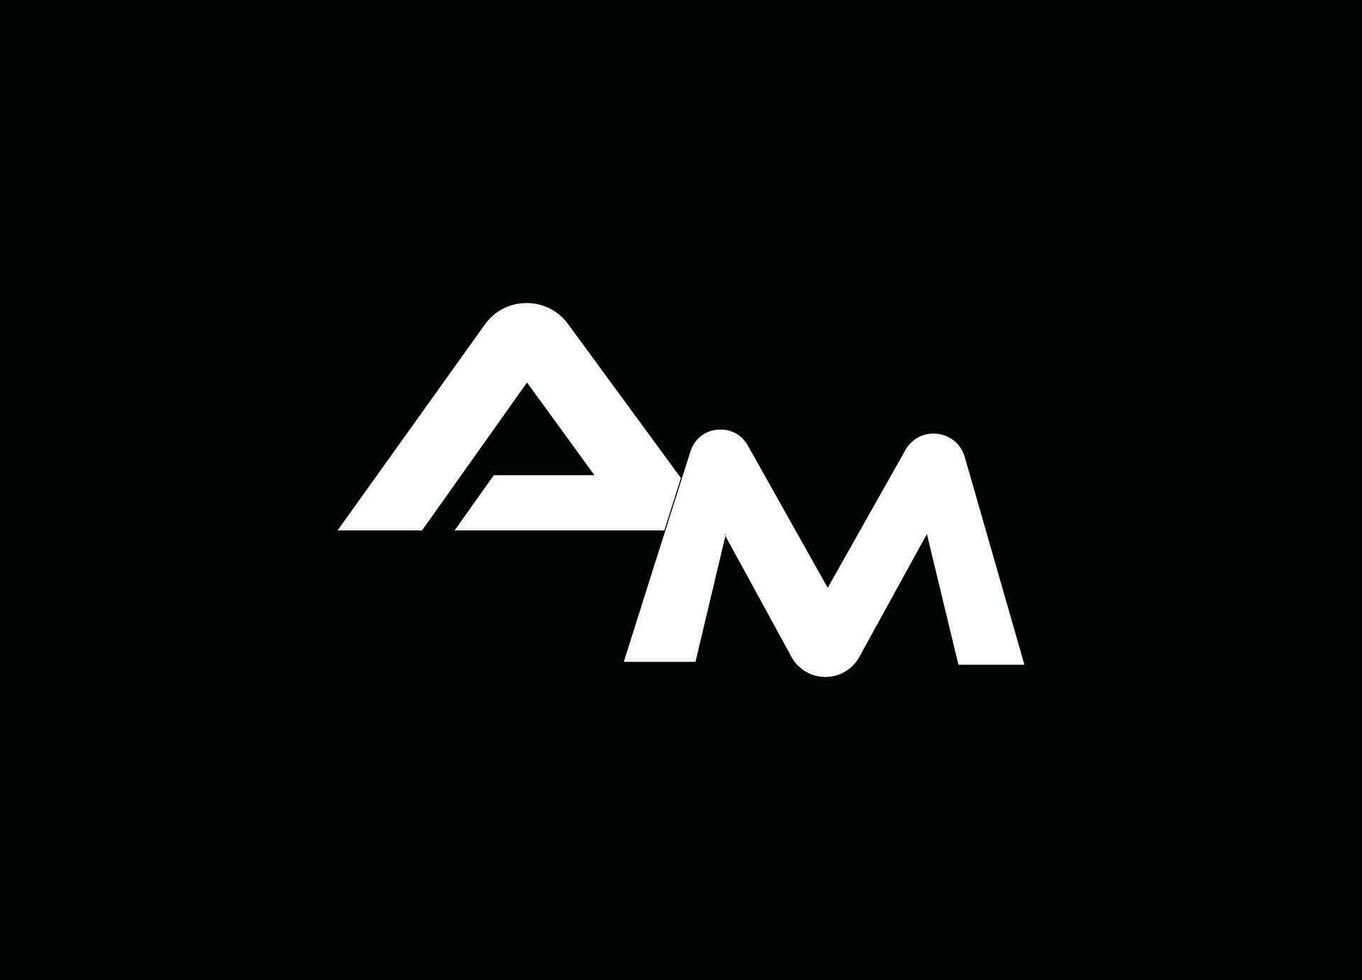 MA LOGO Design, AM logo design ,company logo vector